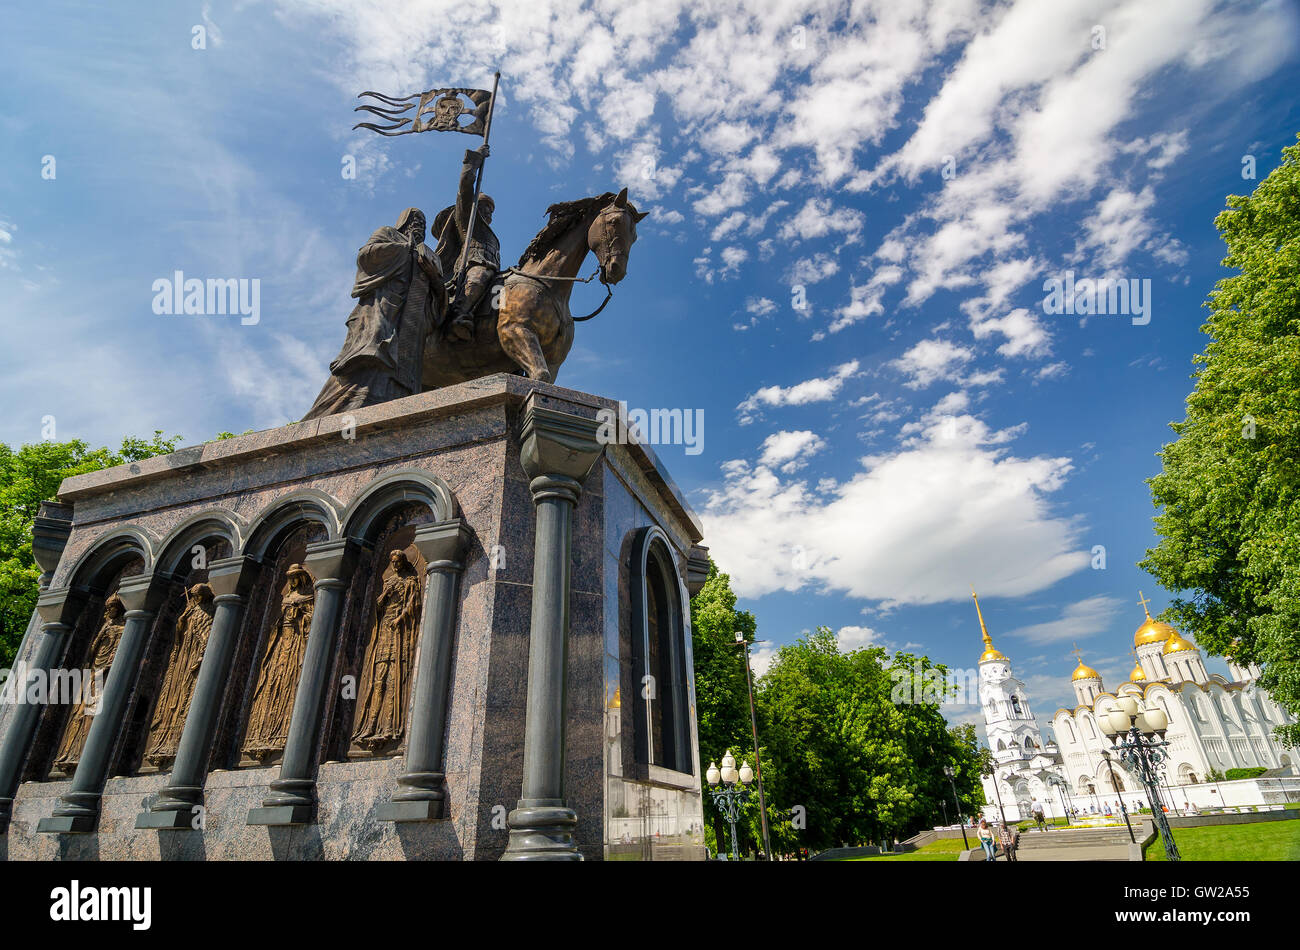 Monument du Prince Vladimir contre la cathédrale de l'assomption ou cathédrale de la Dormition à Vladimir, Russie. Anneau d'or. Banque D'Images